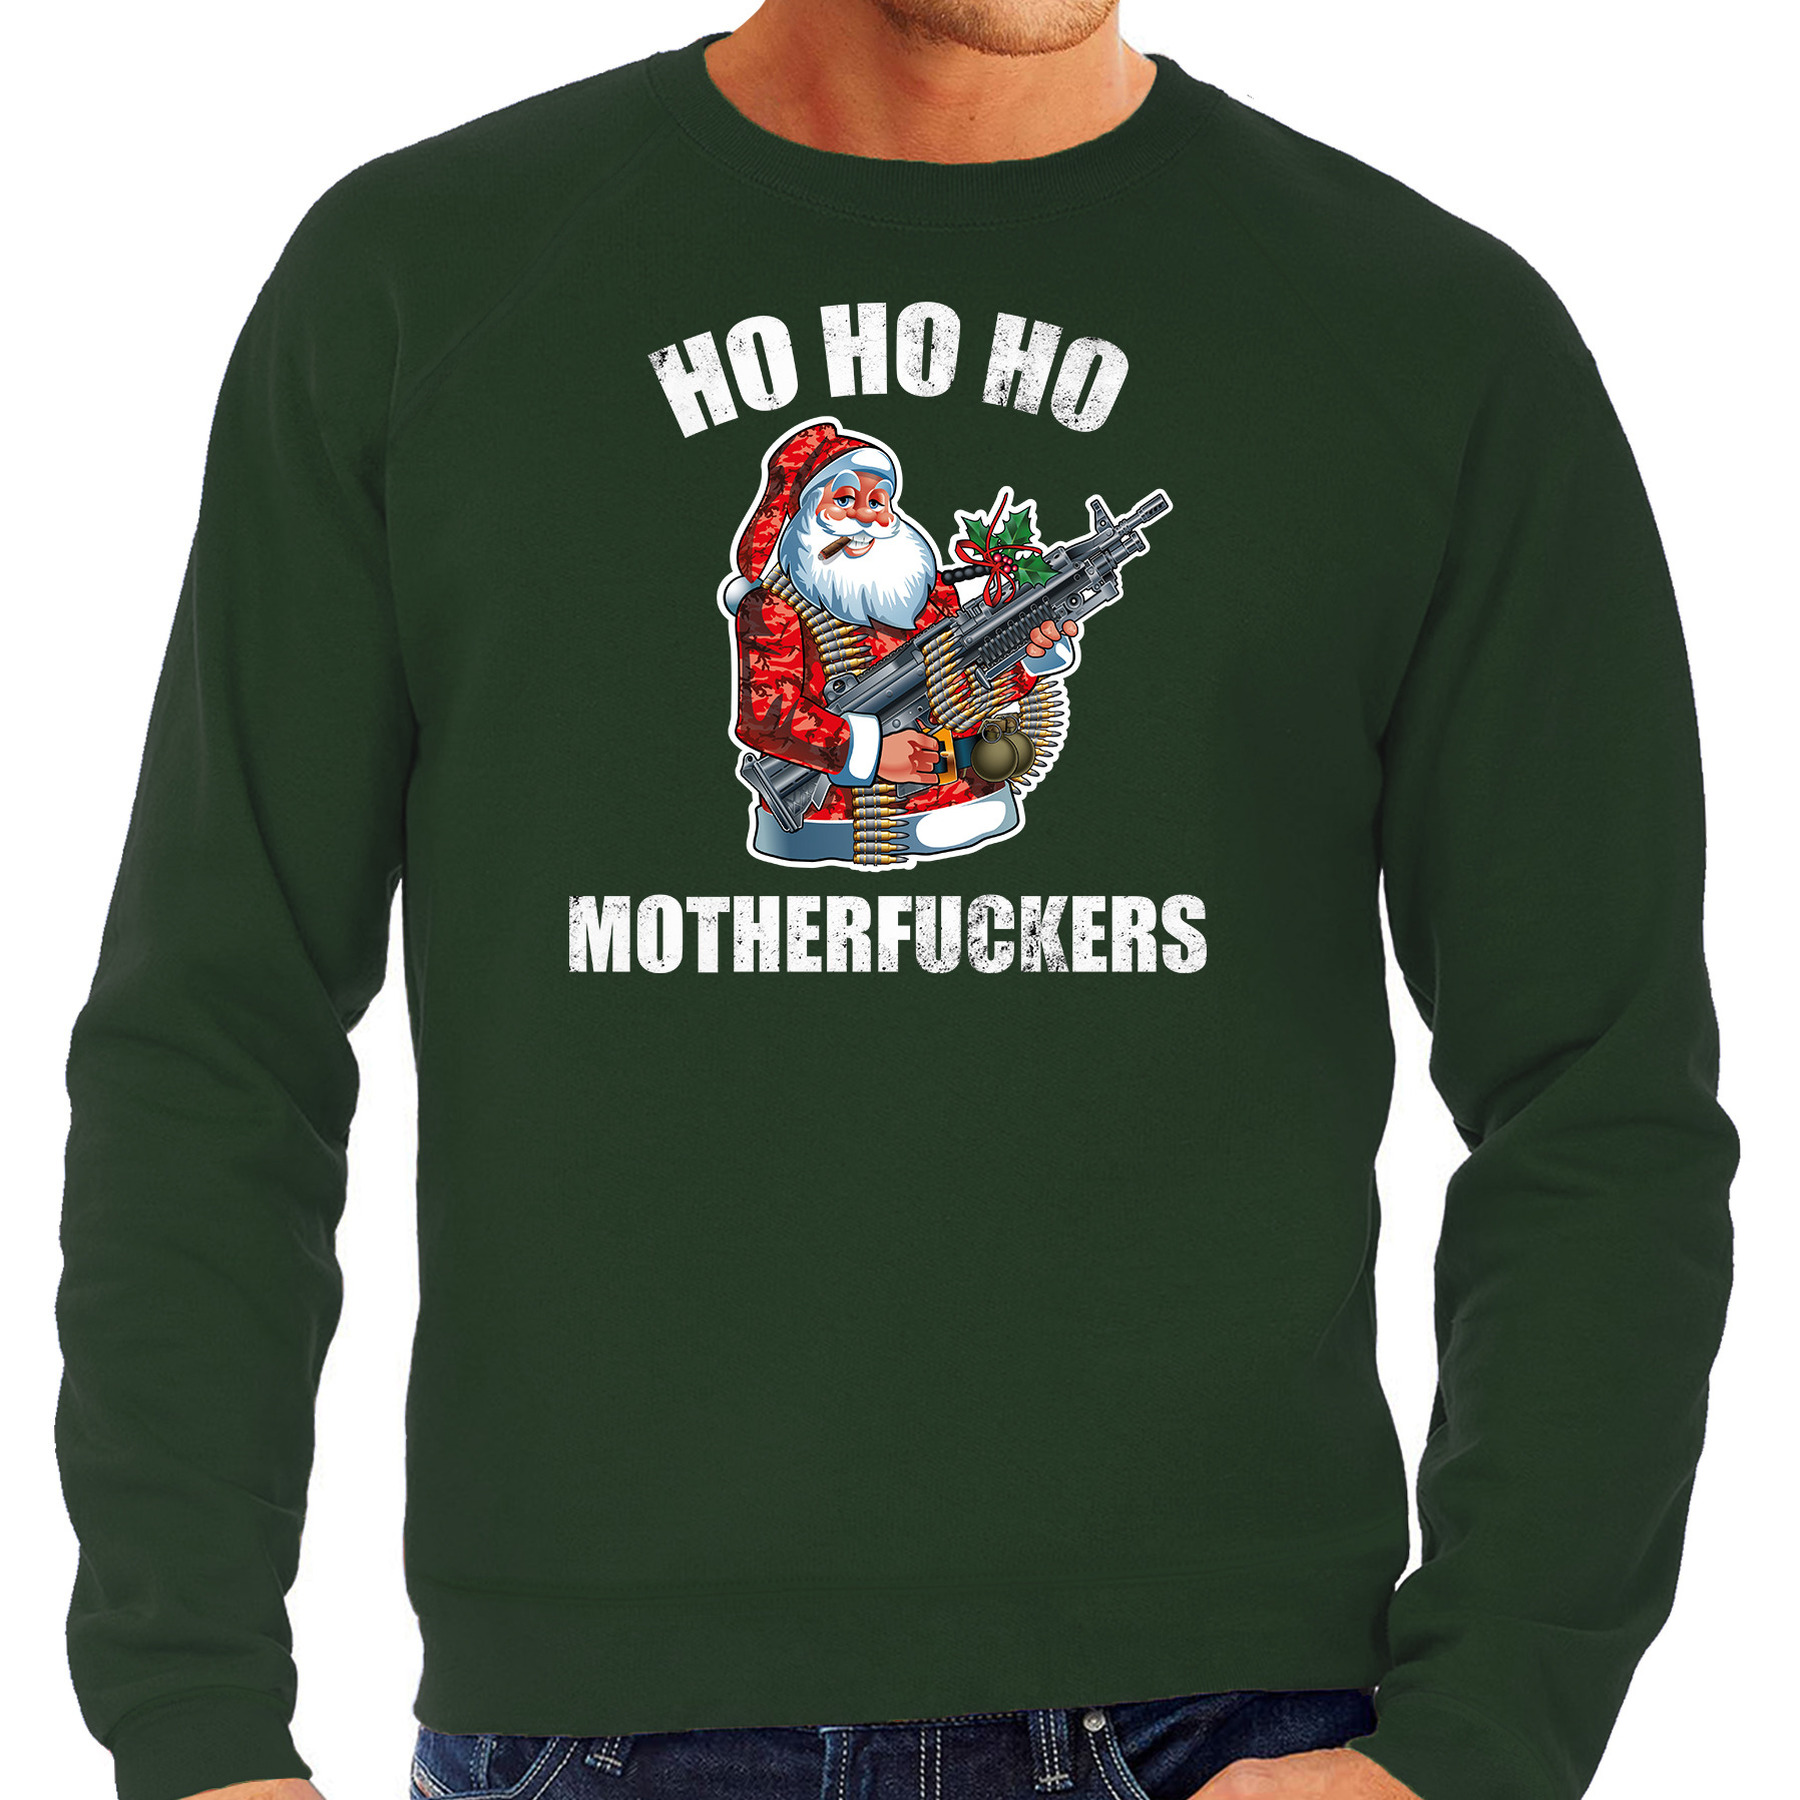 Hohoho motherfuckers foute Kerstsweater-Kersttrui groen voor heren